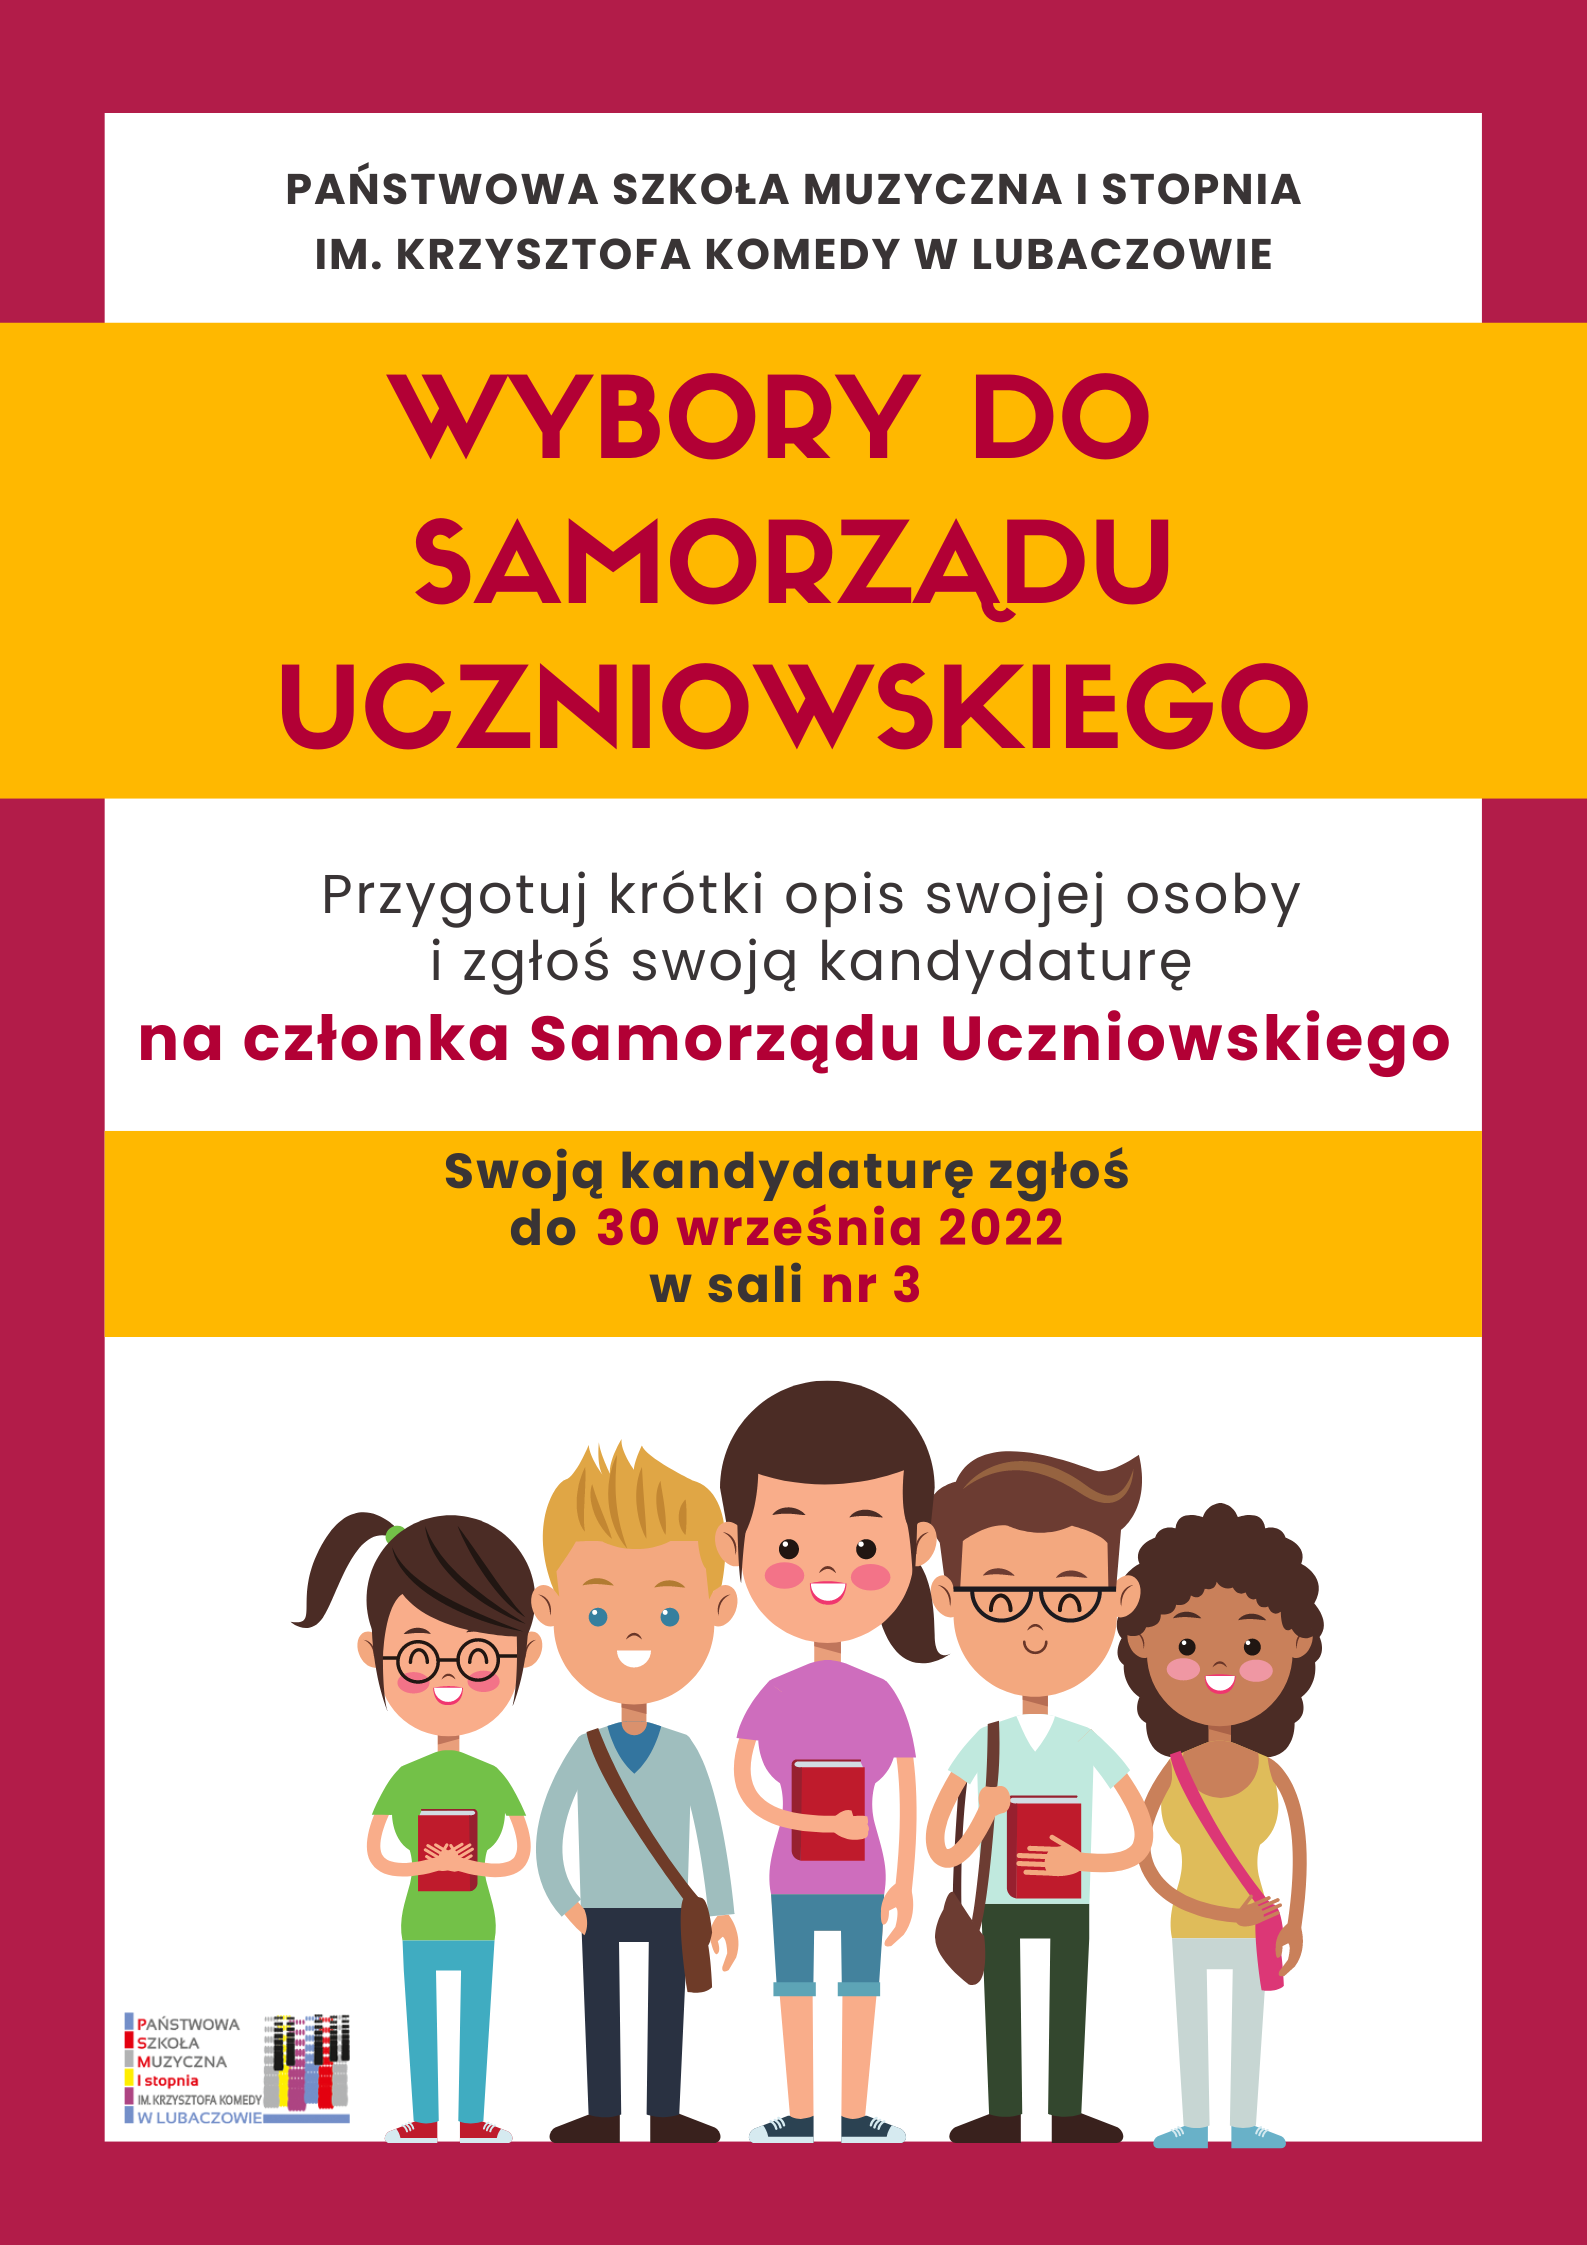 Kolorowy plakat z ikonografią dzieci na dole i informacją o wyborach do samorządu uczniowskiego w terminie do 30 września